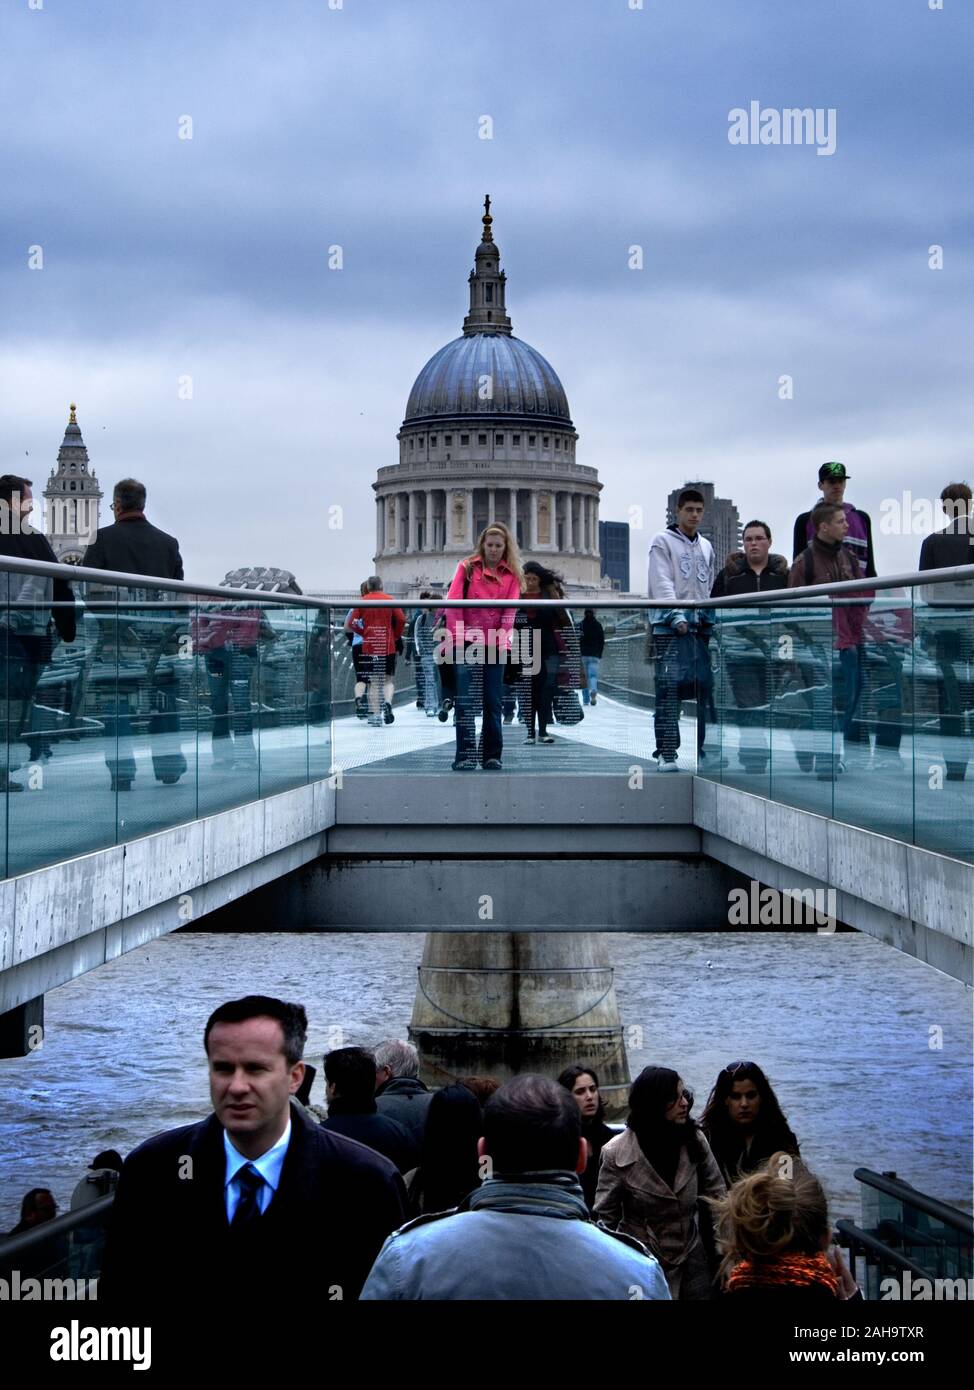 Les personnes occupées dans la rue. Millenium bridge, London, UK Banque D'Images